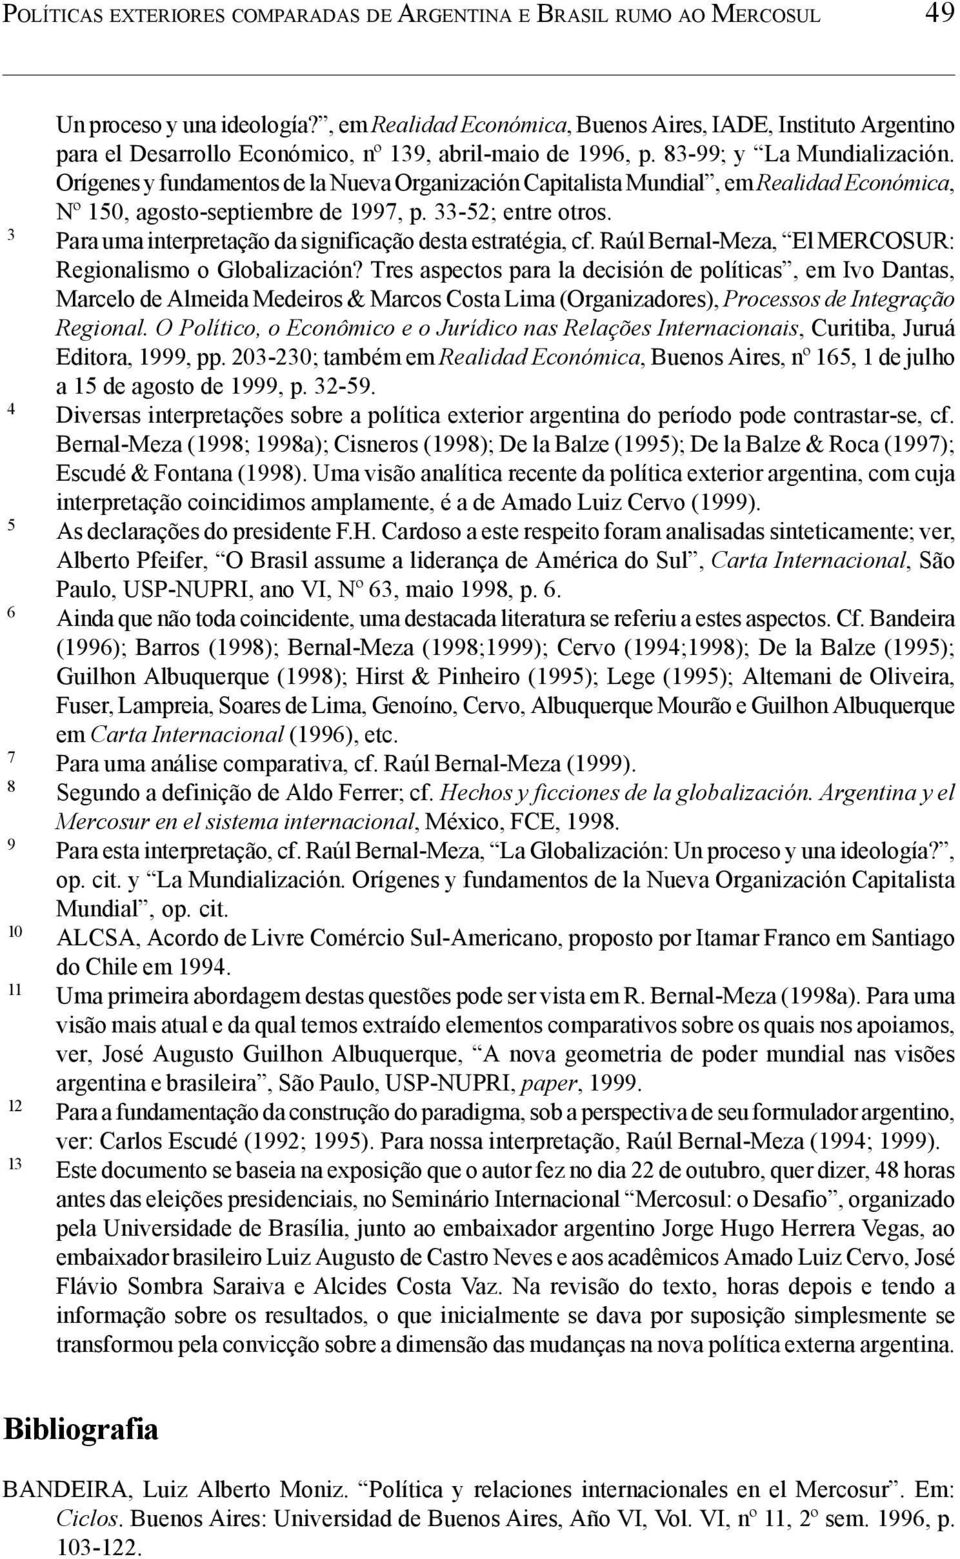 Orígenes y fundamentos de la Nueva Organización Capitalista Mundial, em Realidad Económica, Nº 150, agosto-septiembre de 1997, p. 33-52; entre otros.